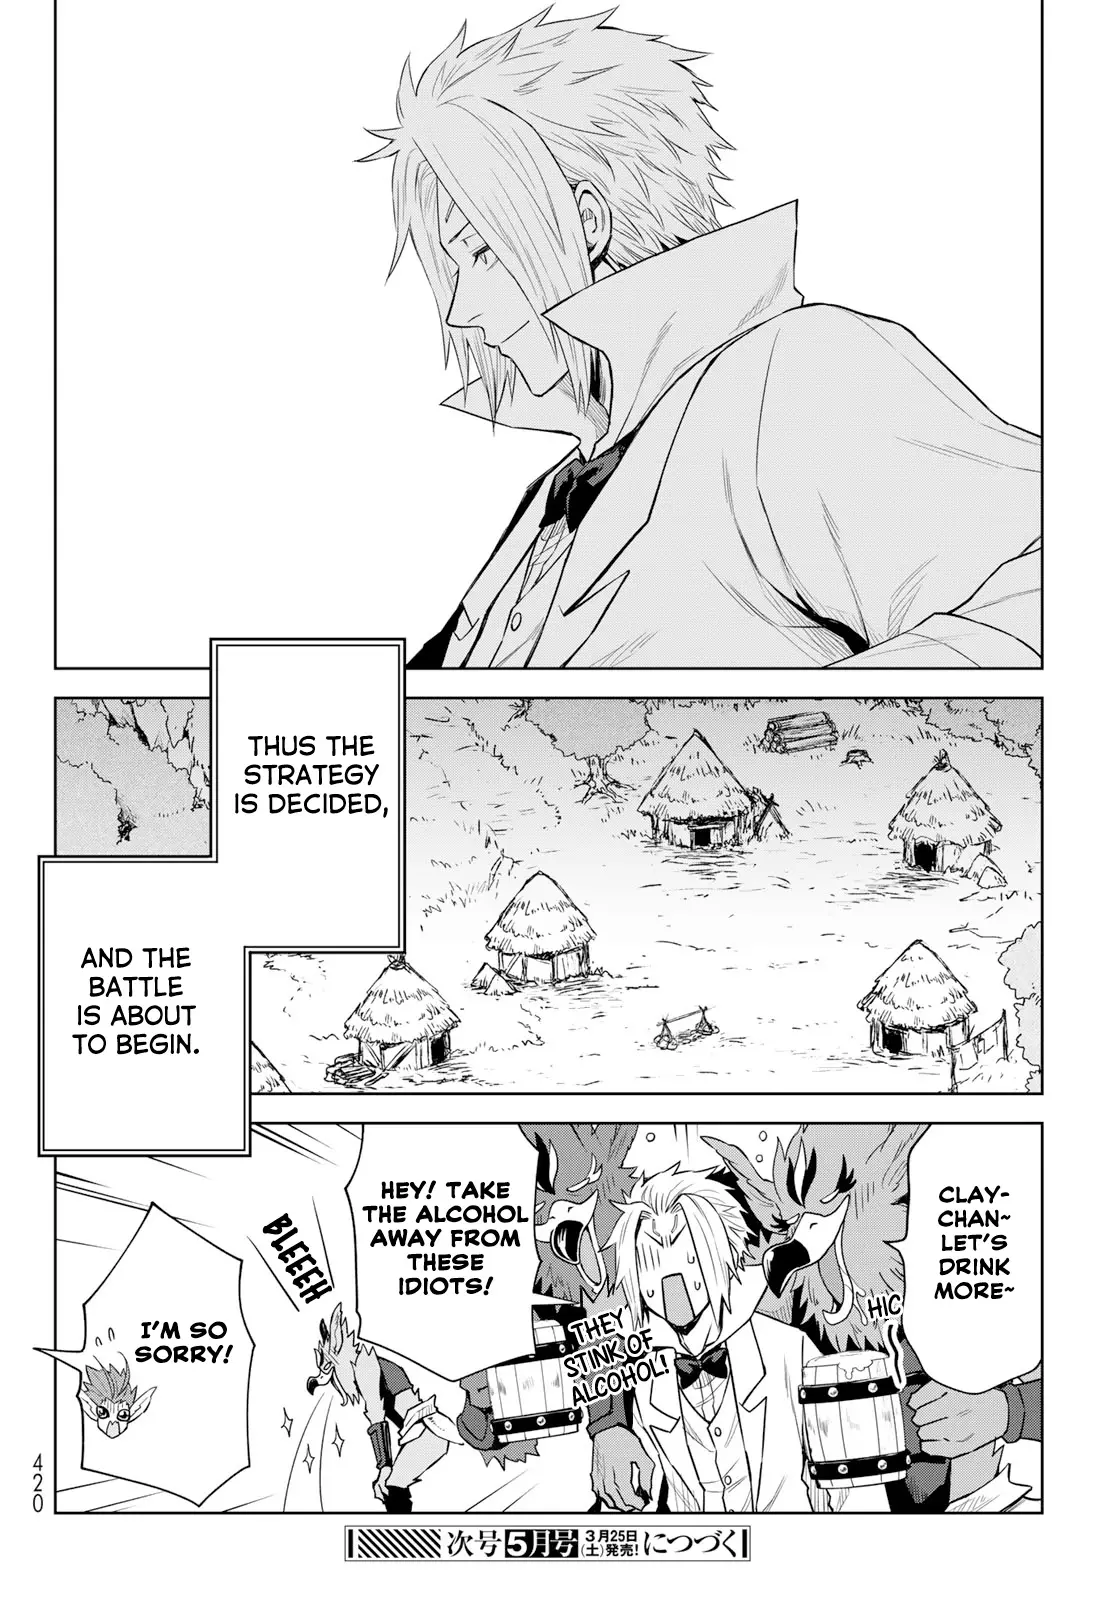 Tensei Shitara Slime Datta Ken: Clayman Revenge - 11 page 24-e4a5b297